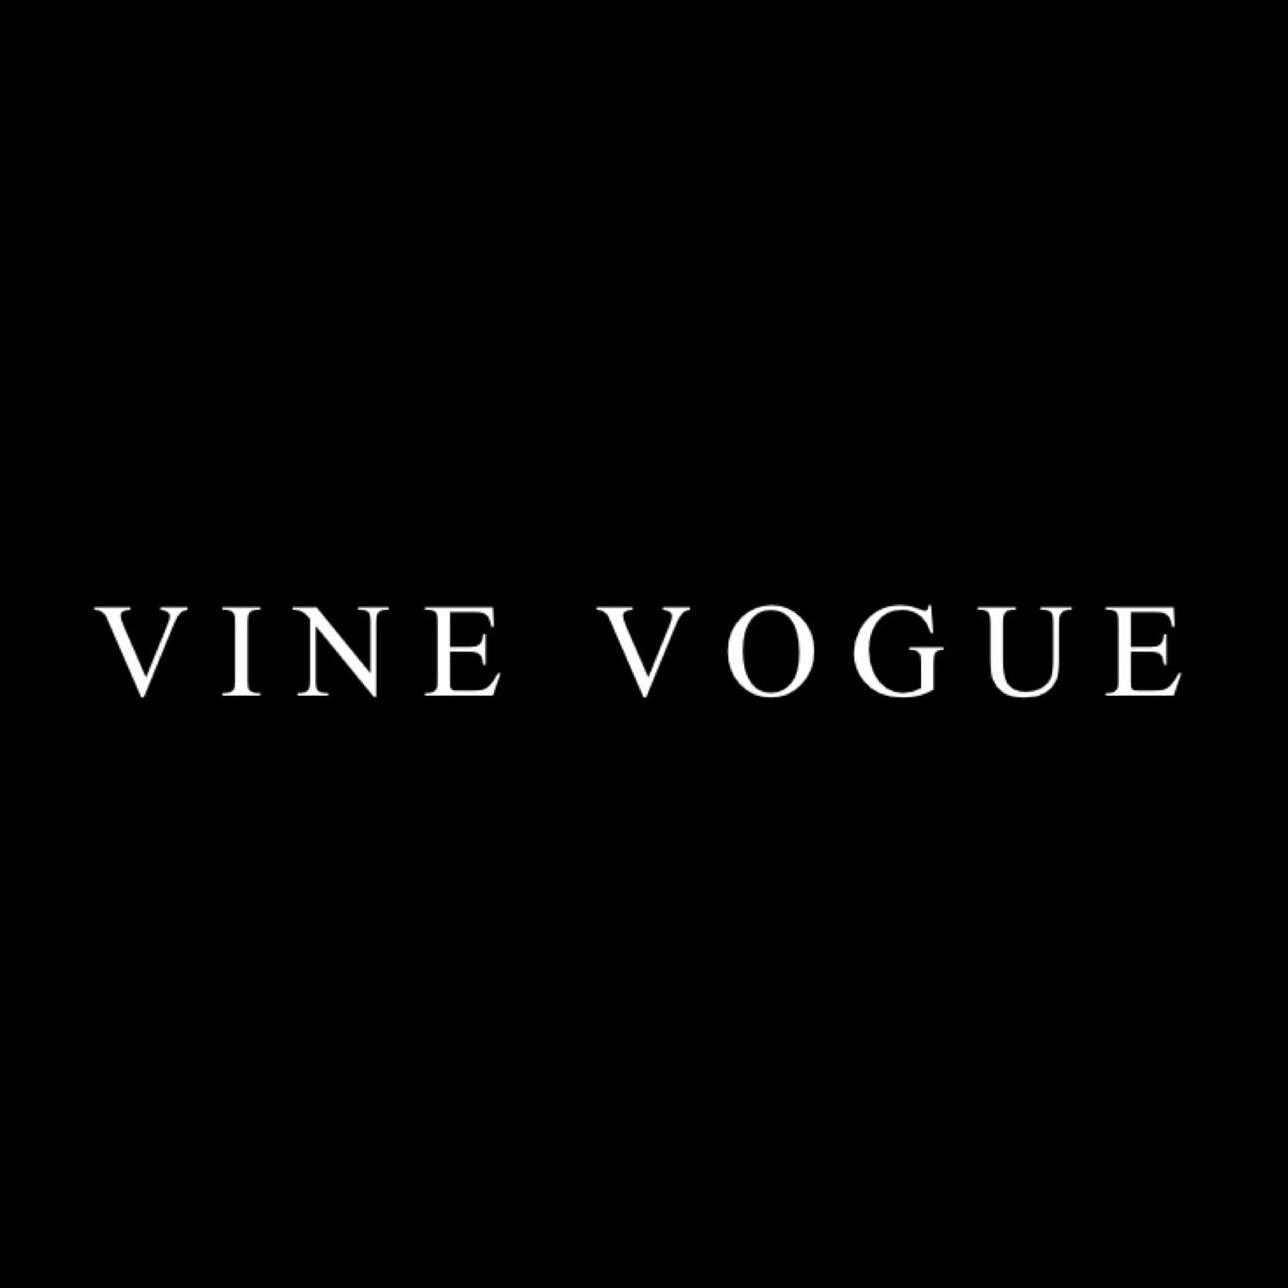 Vine Vogue